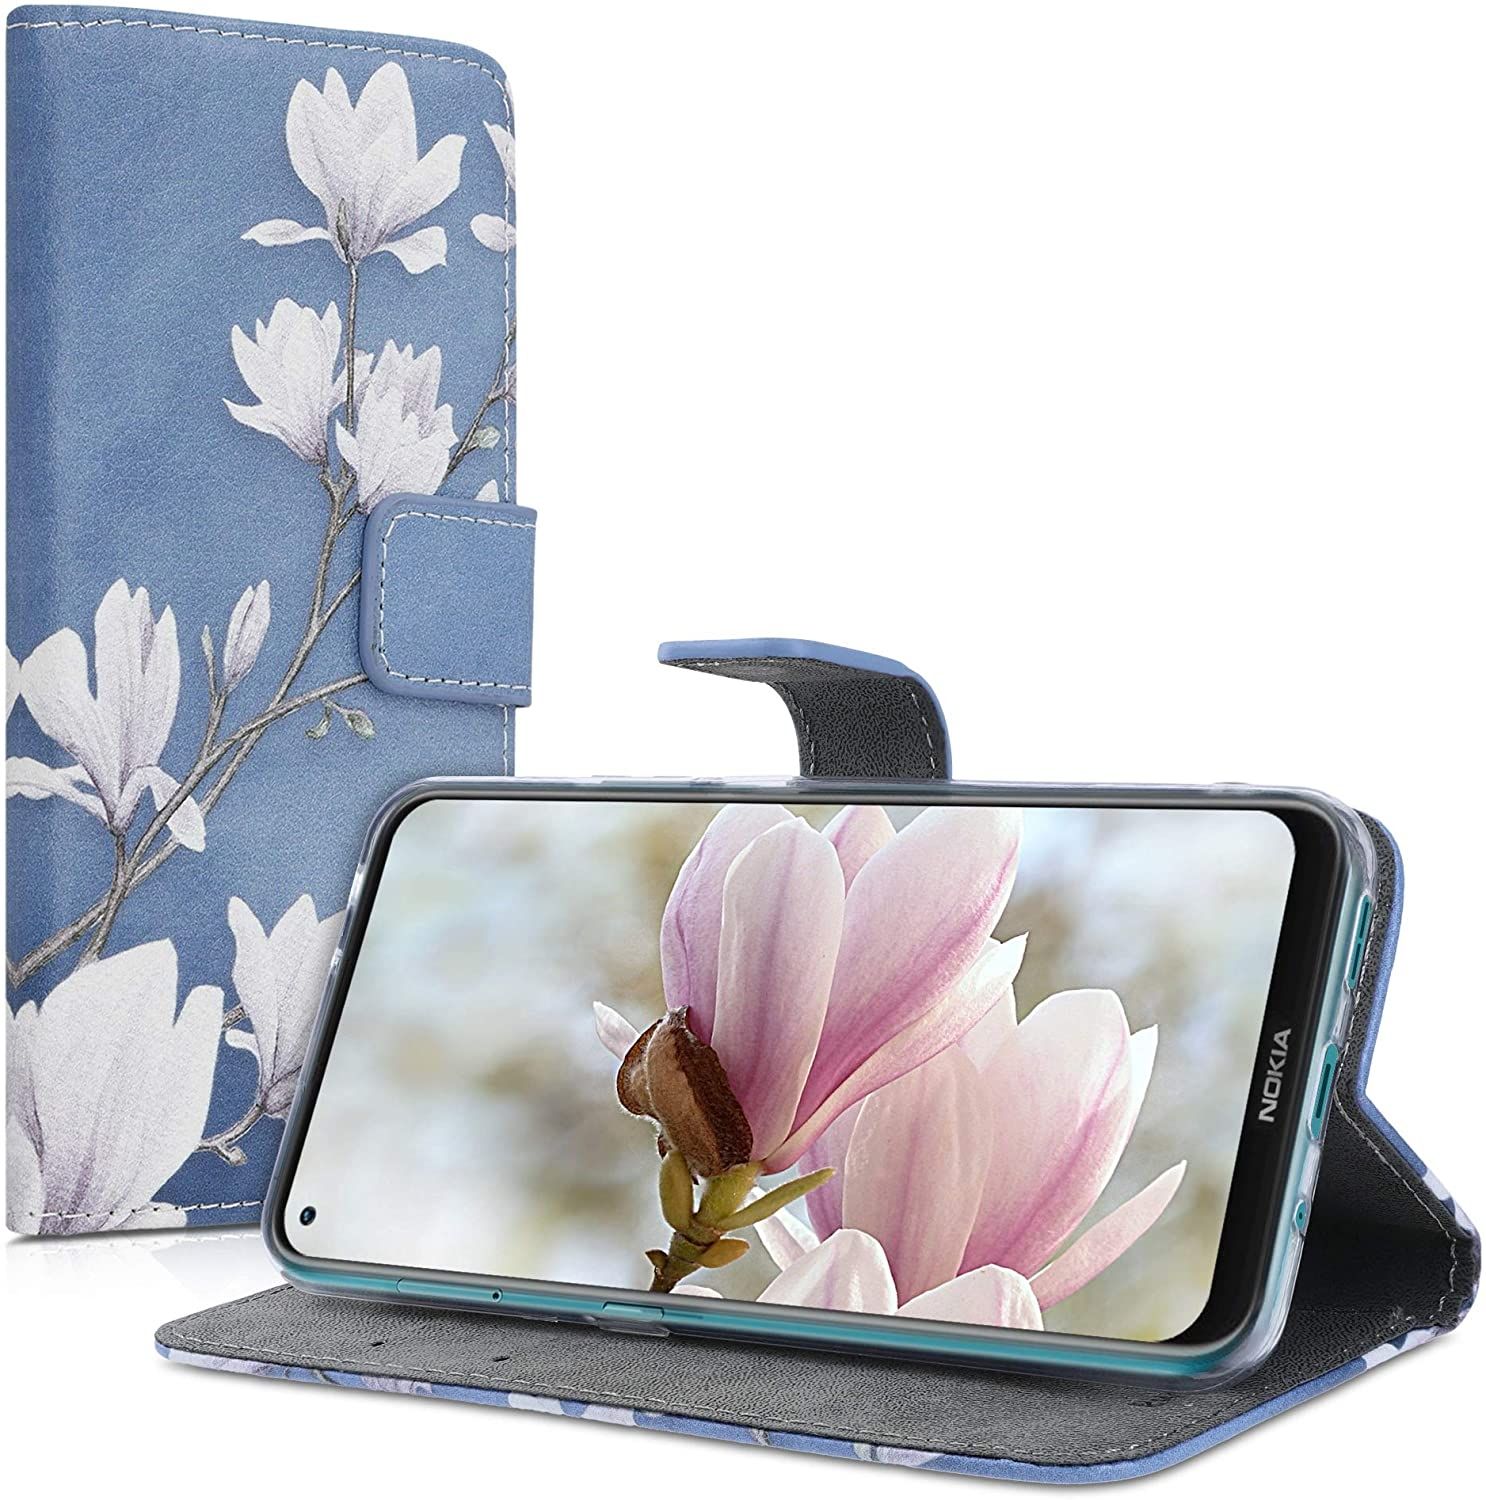 kw-mobile-thiki-portofoli-nokia-3.4-magnolias-taupe-white-blue-grey_4.jpg